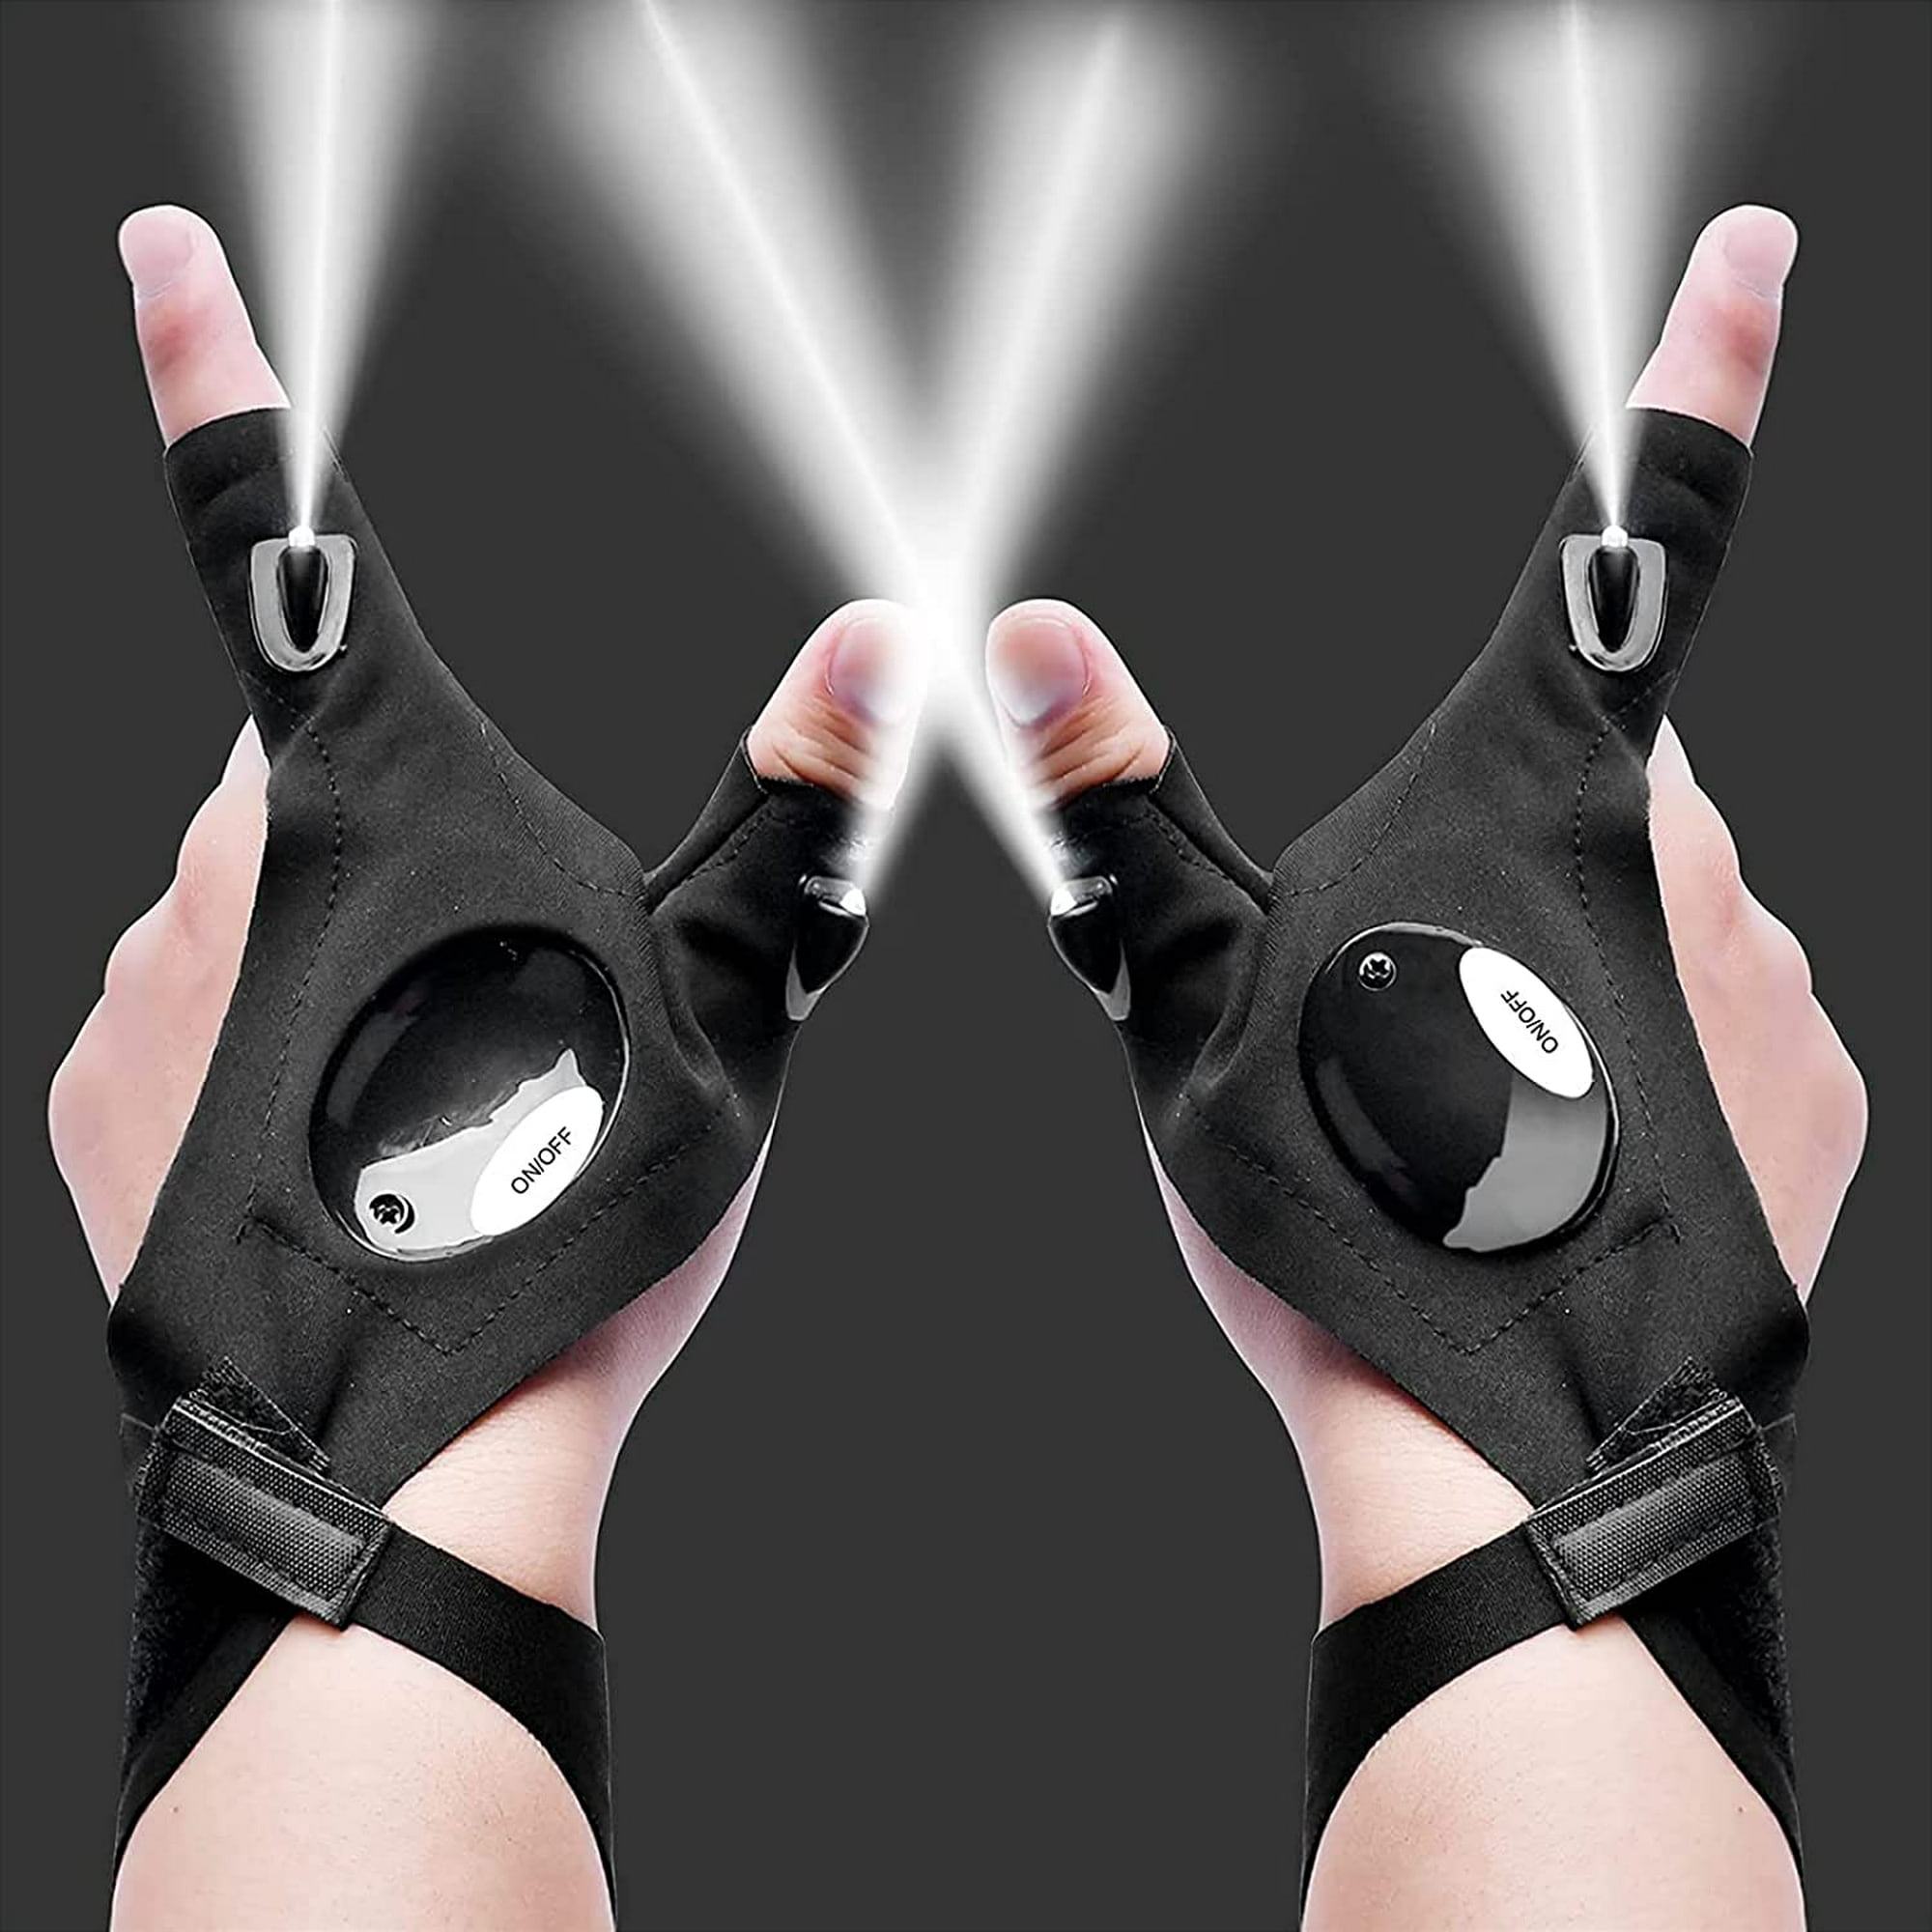 Estos guantes con luz pueden ser geniales para reparaciones o